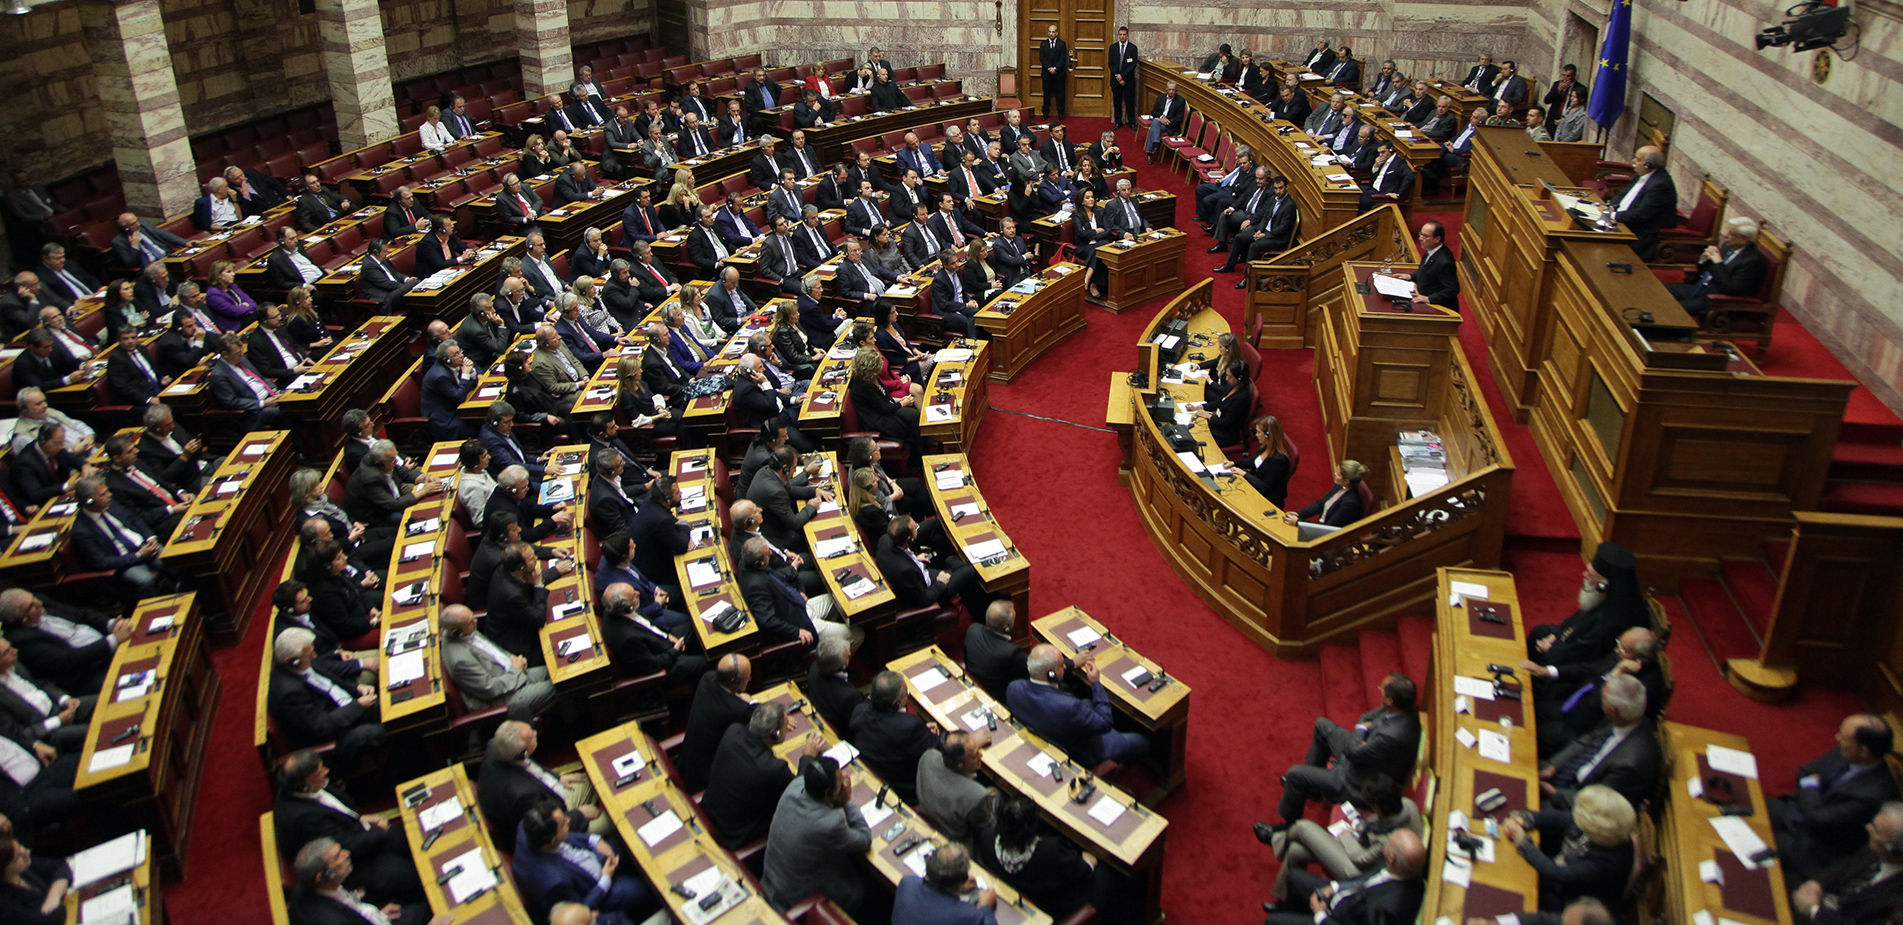 Οι ξένοι ηγέτες που τους έχει επιτραπεί να μιλήσουν στη Βουλή των Ελλήνων